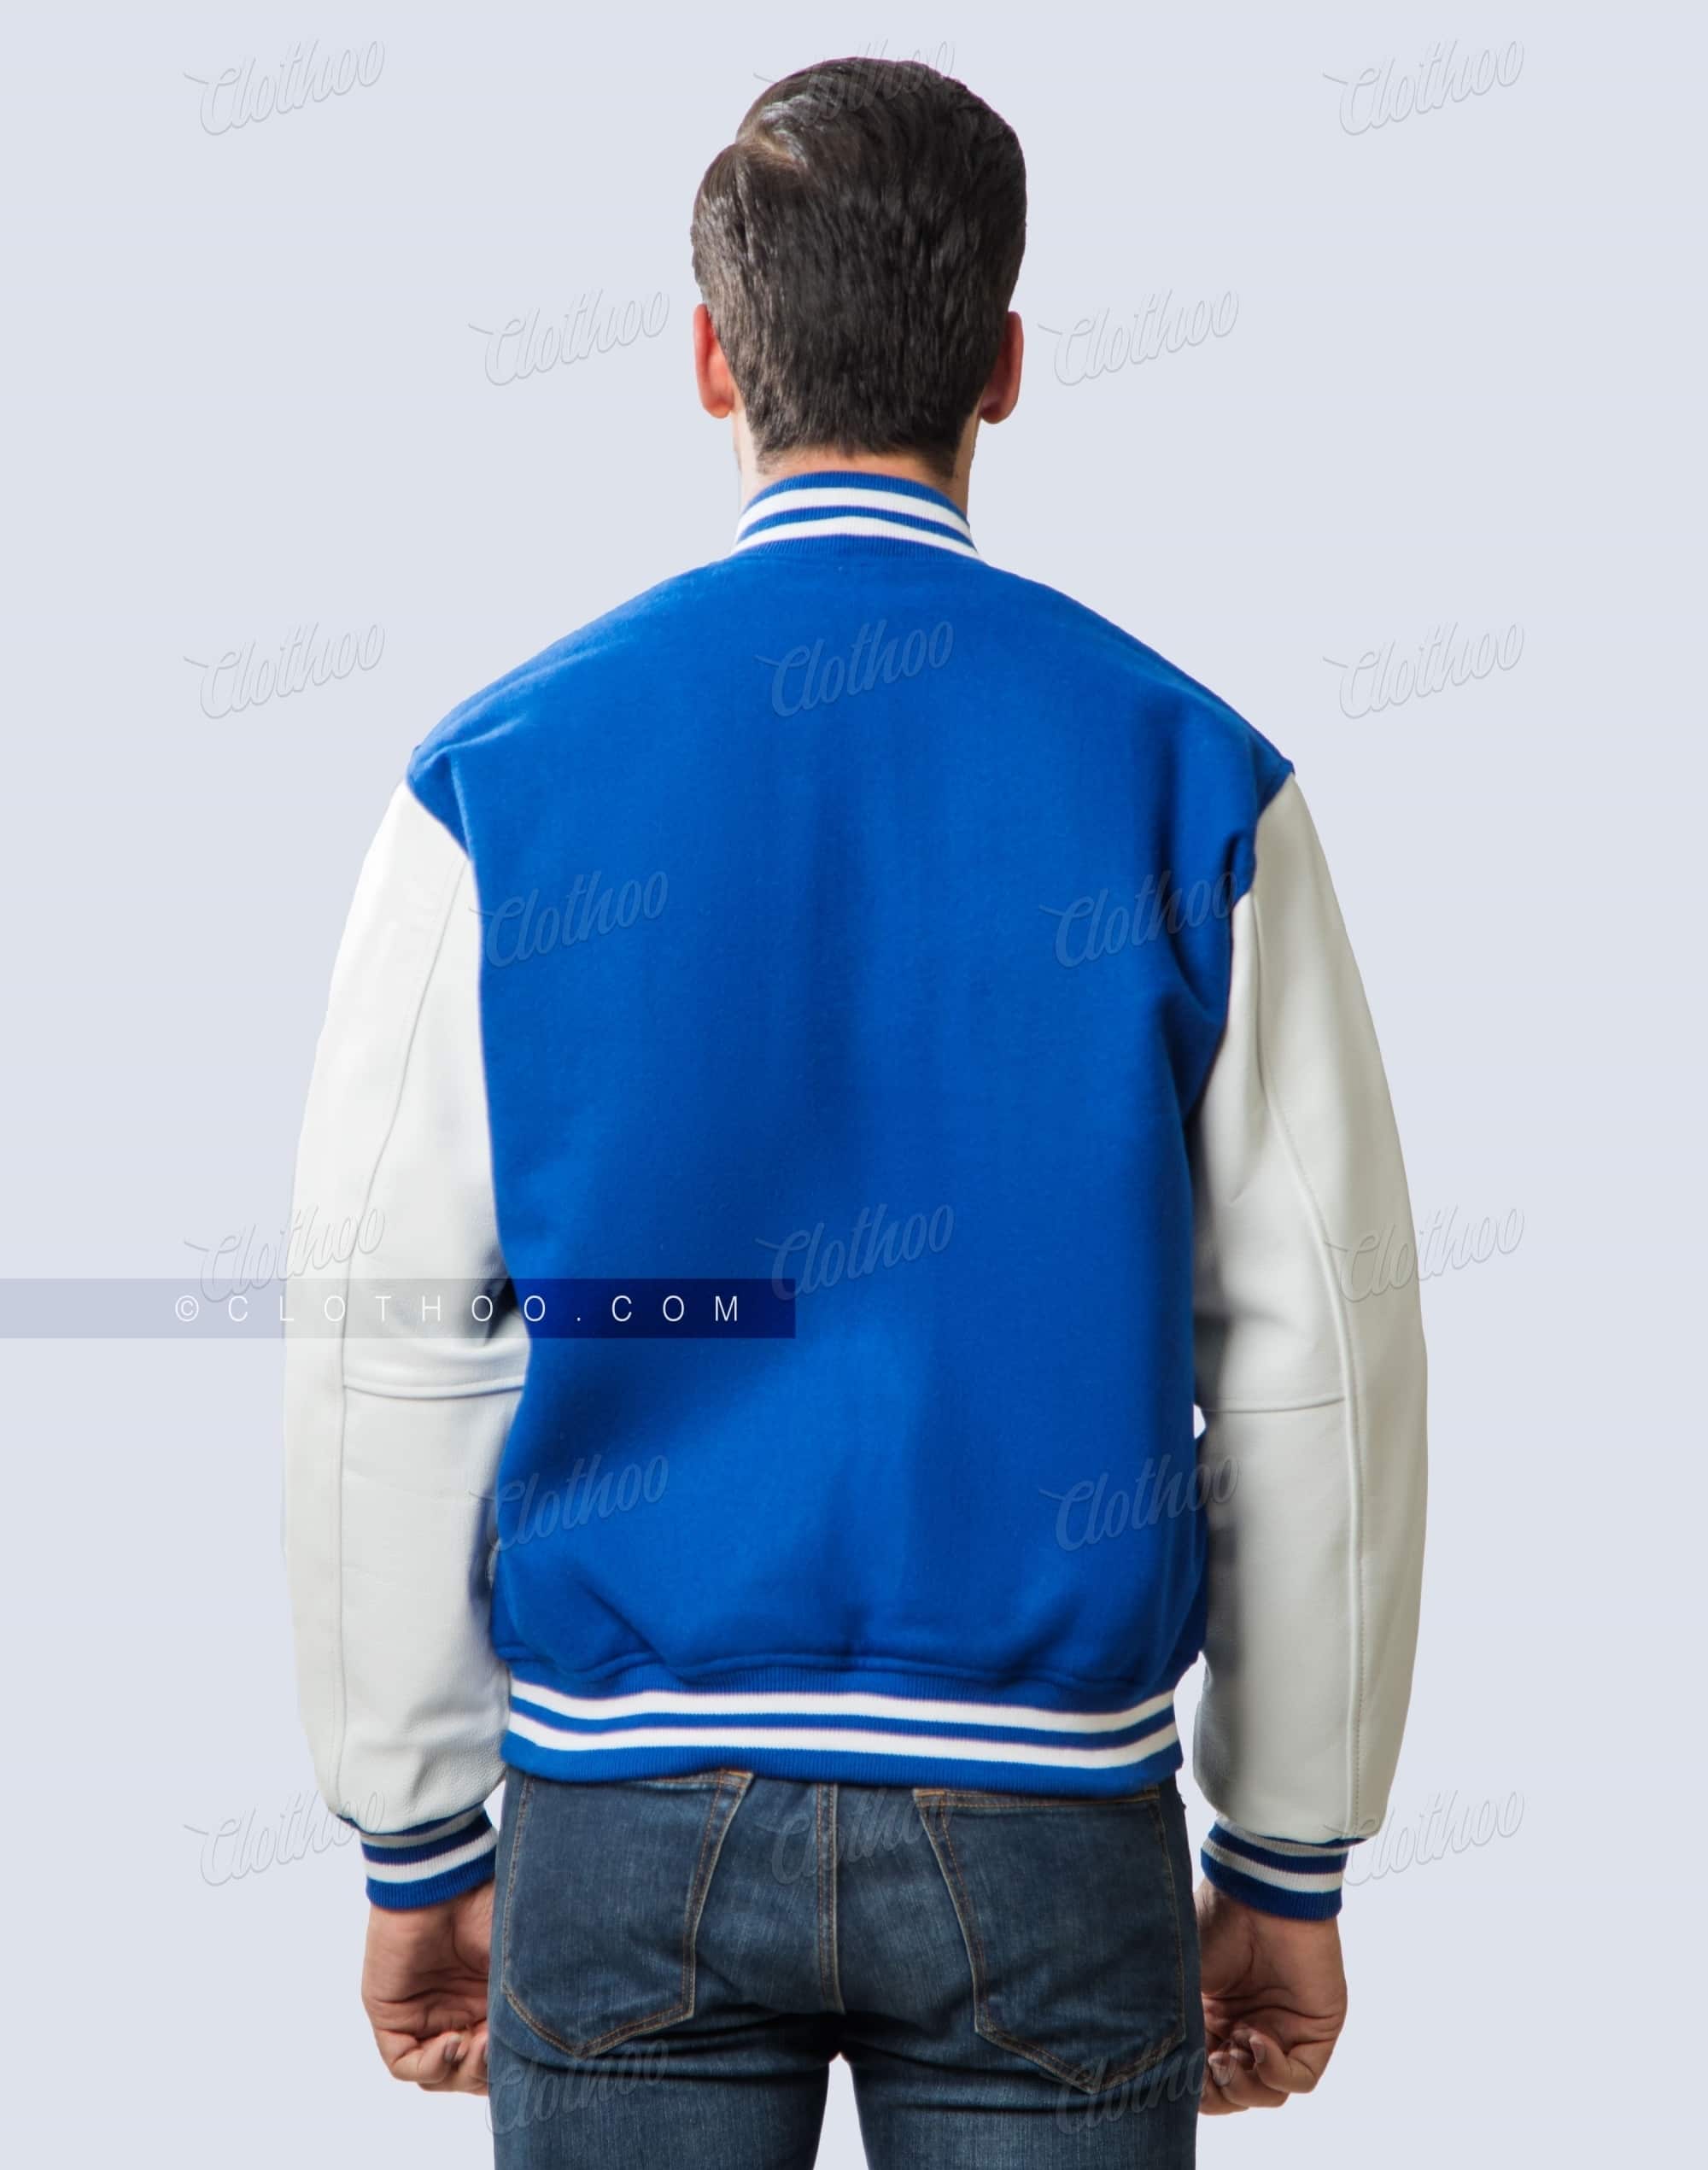 Varsity Jacket Leather Sleeves In Royal Blue White Clothoo